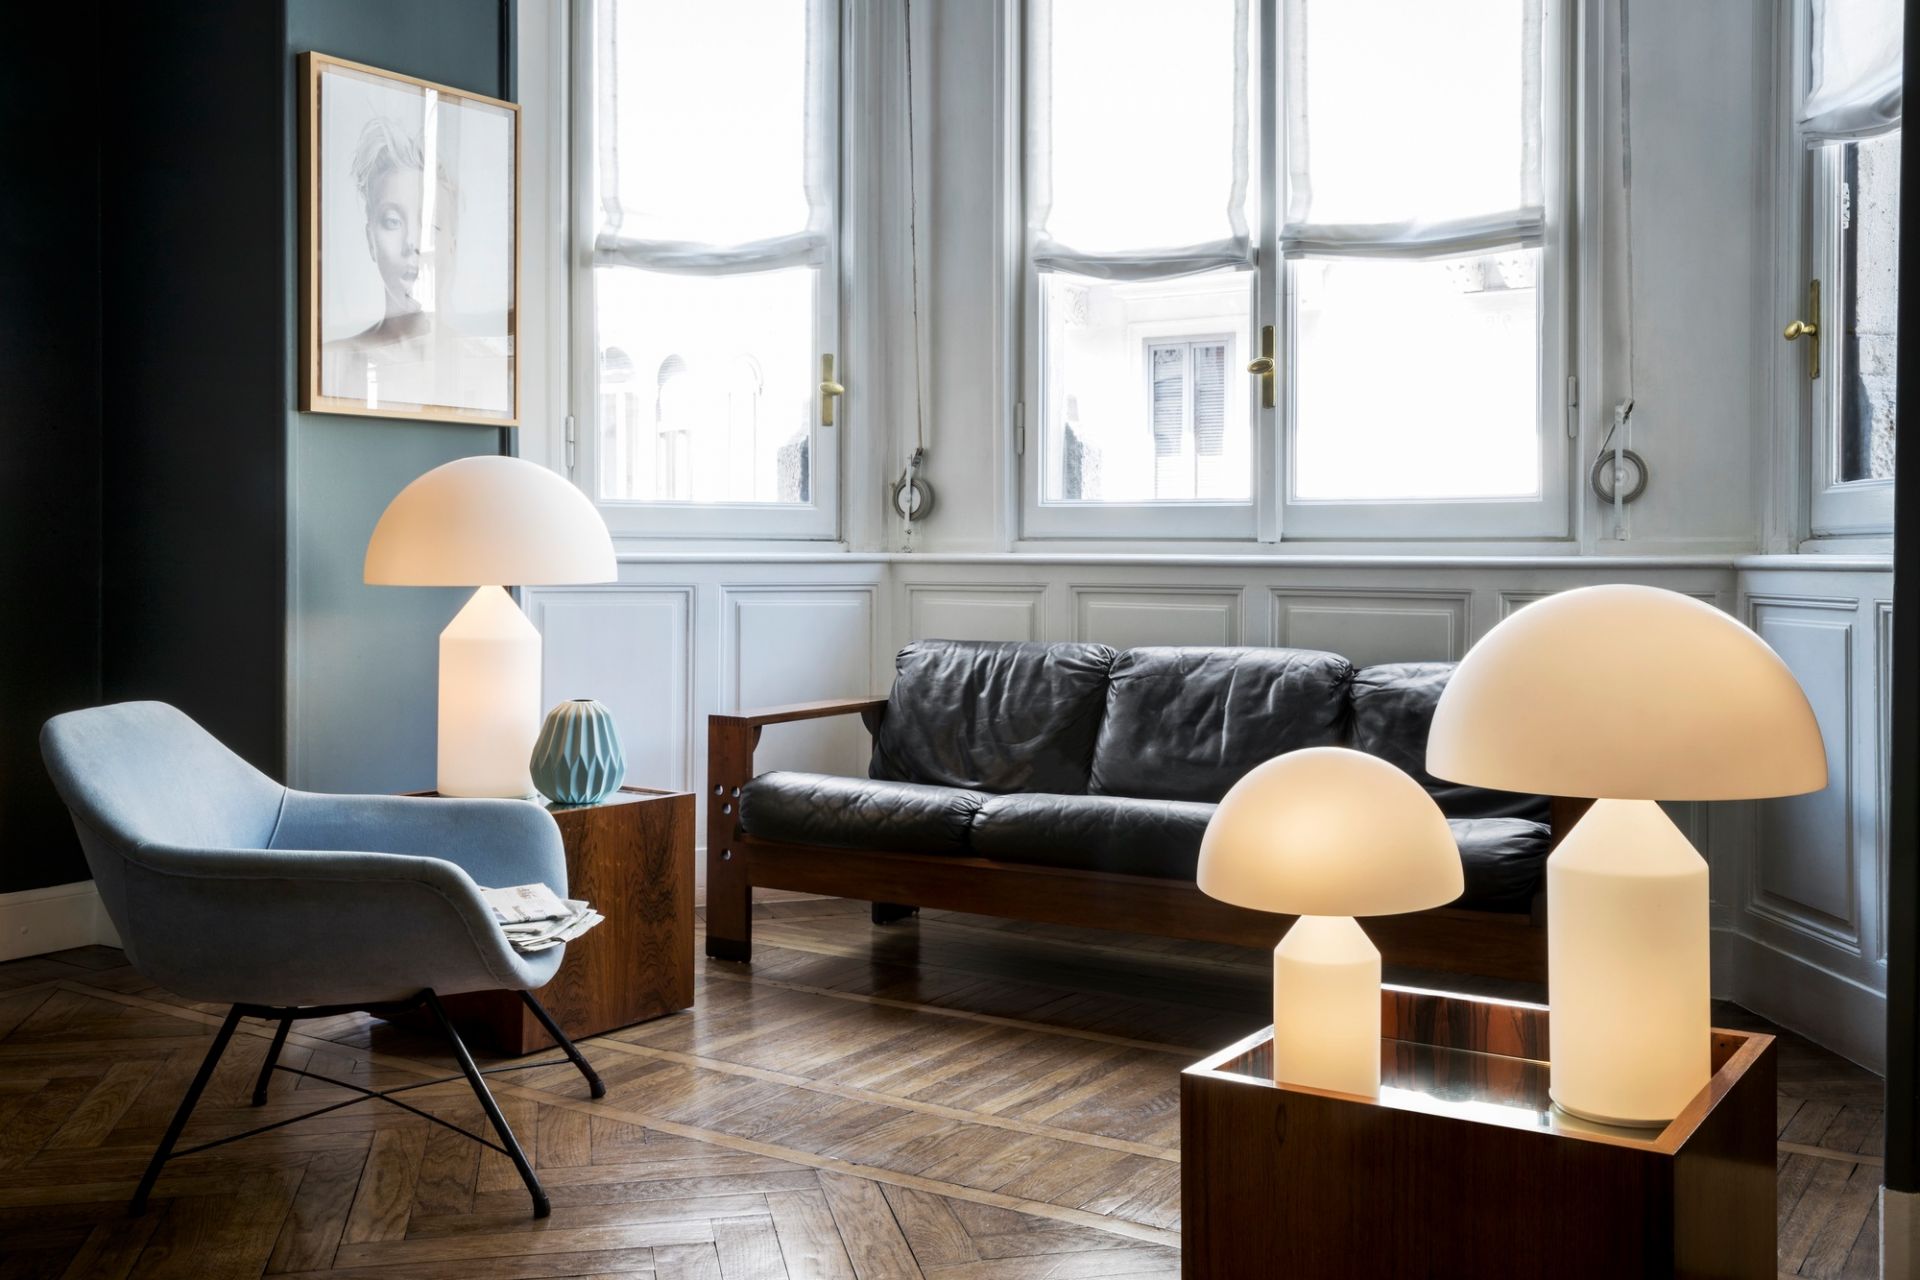 One Light Vs Multi Head Lamp Living Room